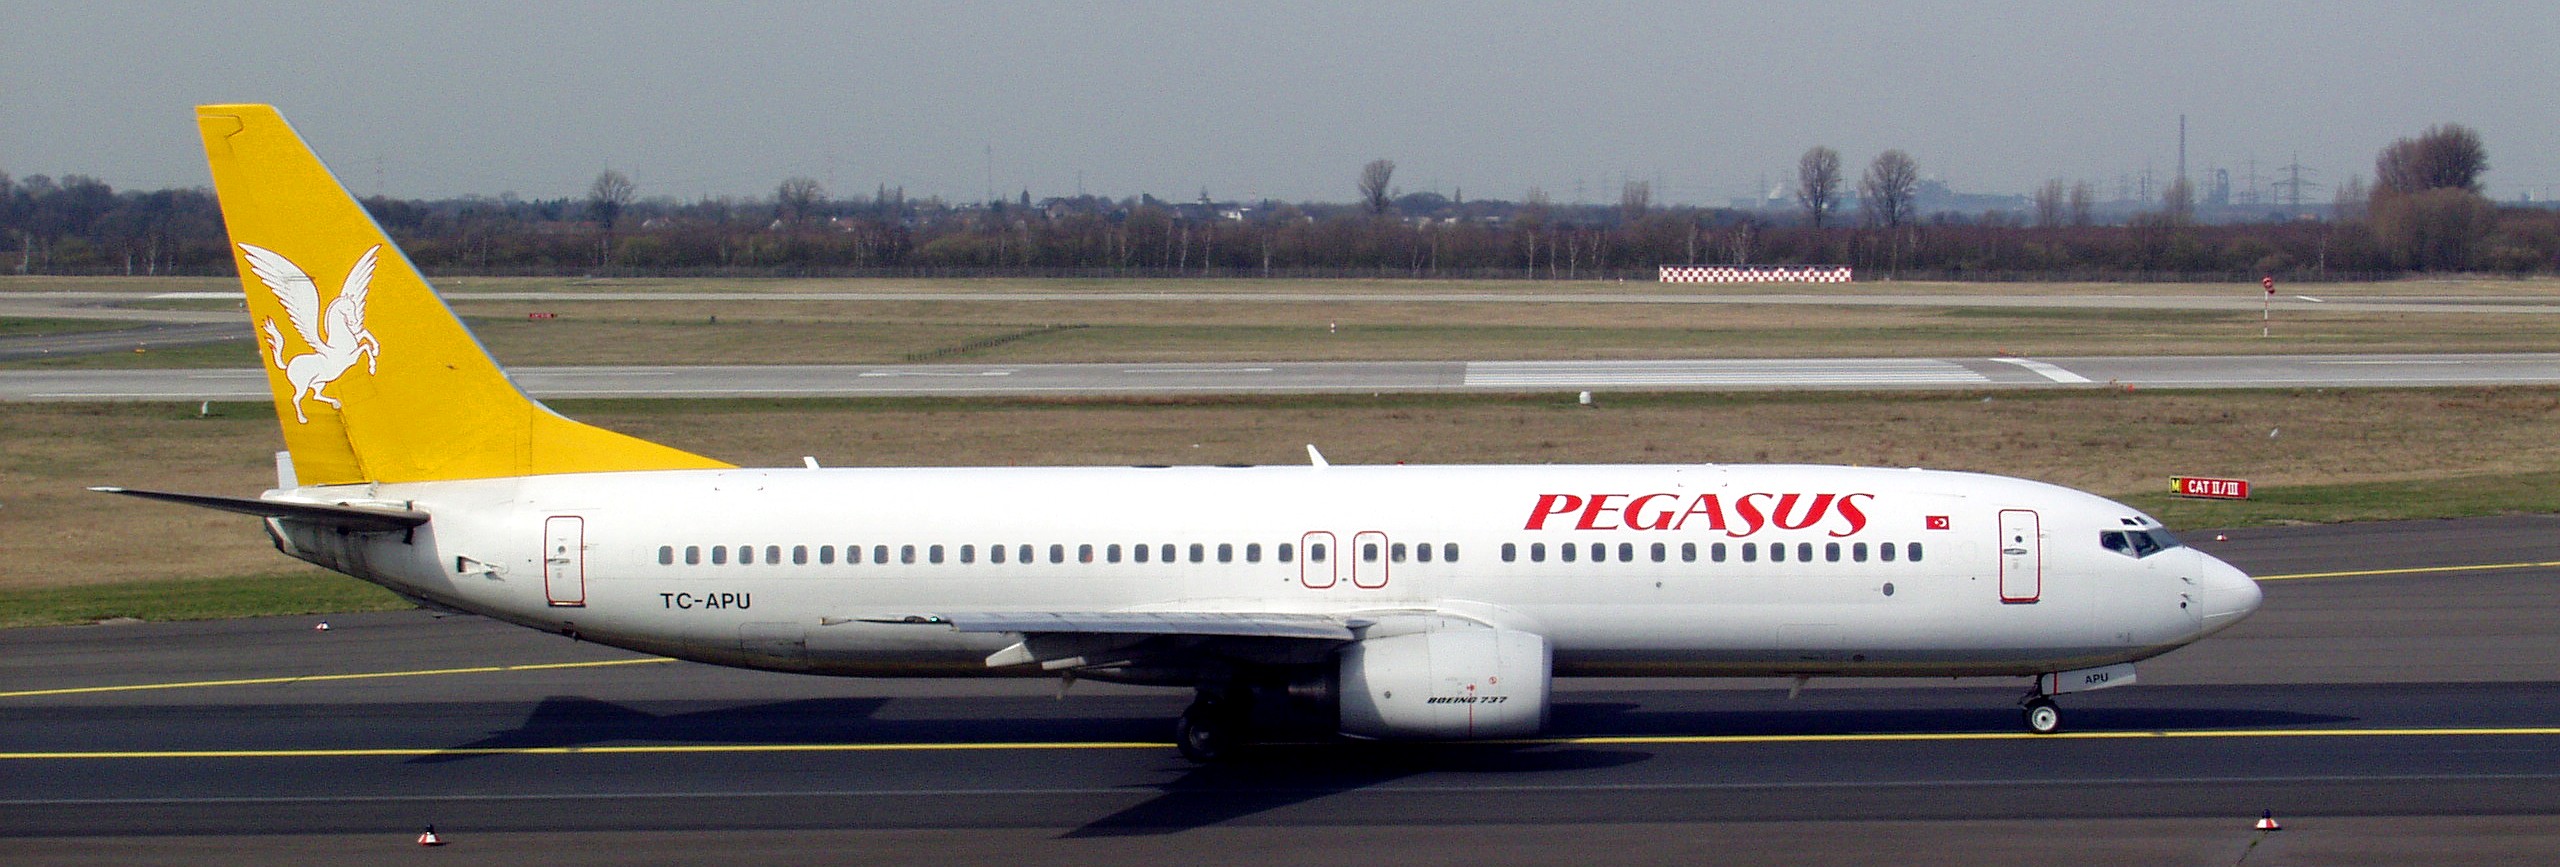 Pegasus airlines